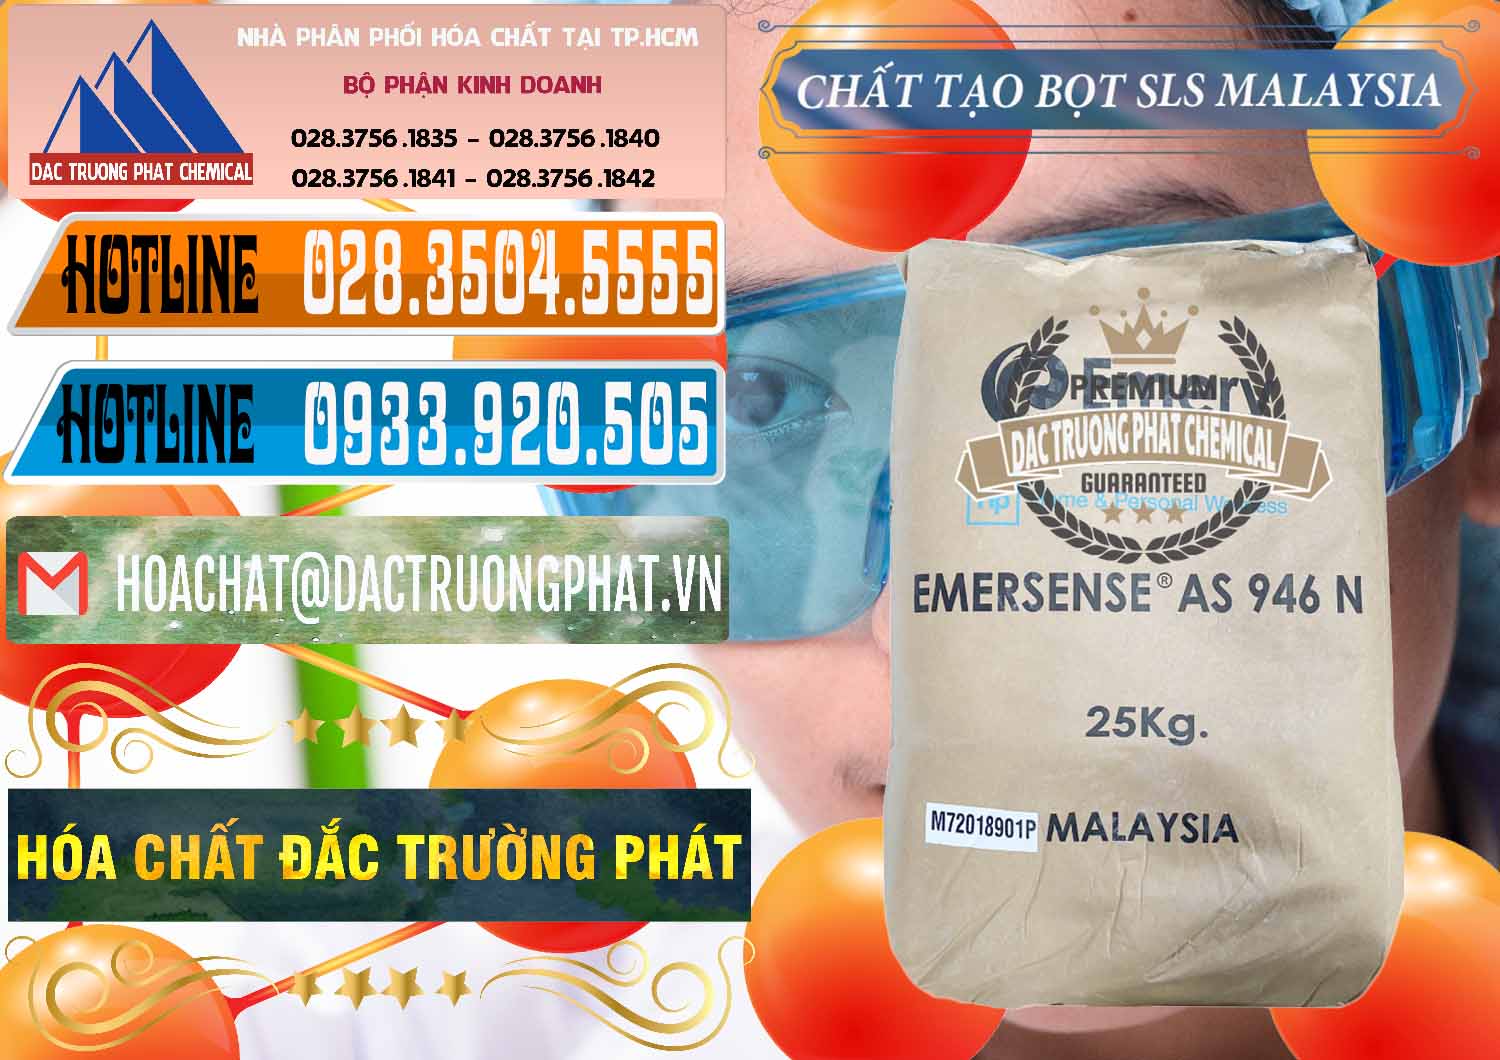 Cty bán và cung cấp Chất Tạo Bọt SLS Emery - Emersense AS 946N Mã Lai Malaysia - 0423 - Công ty chuyên phân phối và bán hóa chất tại TP.HCM - stmp.net